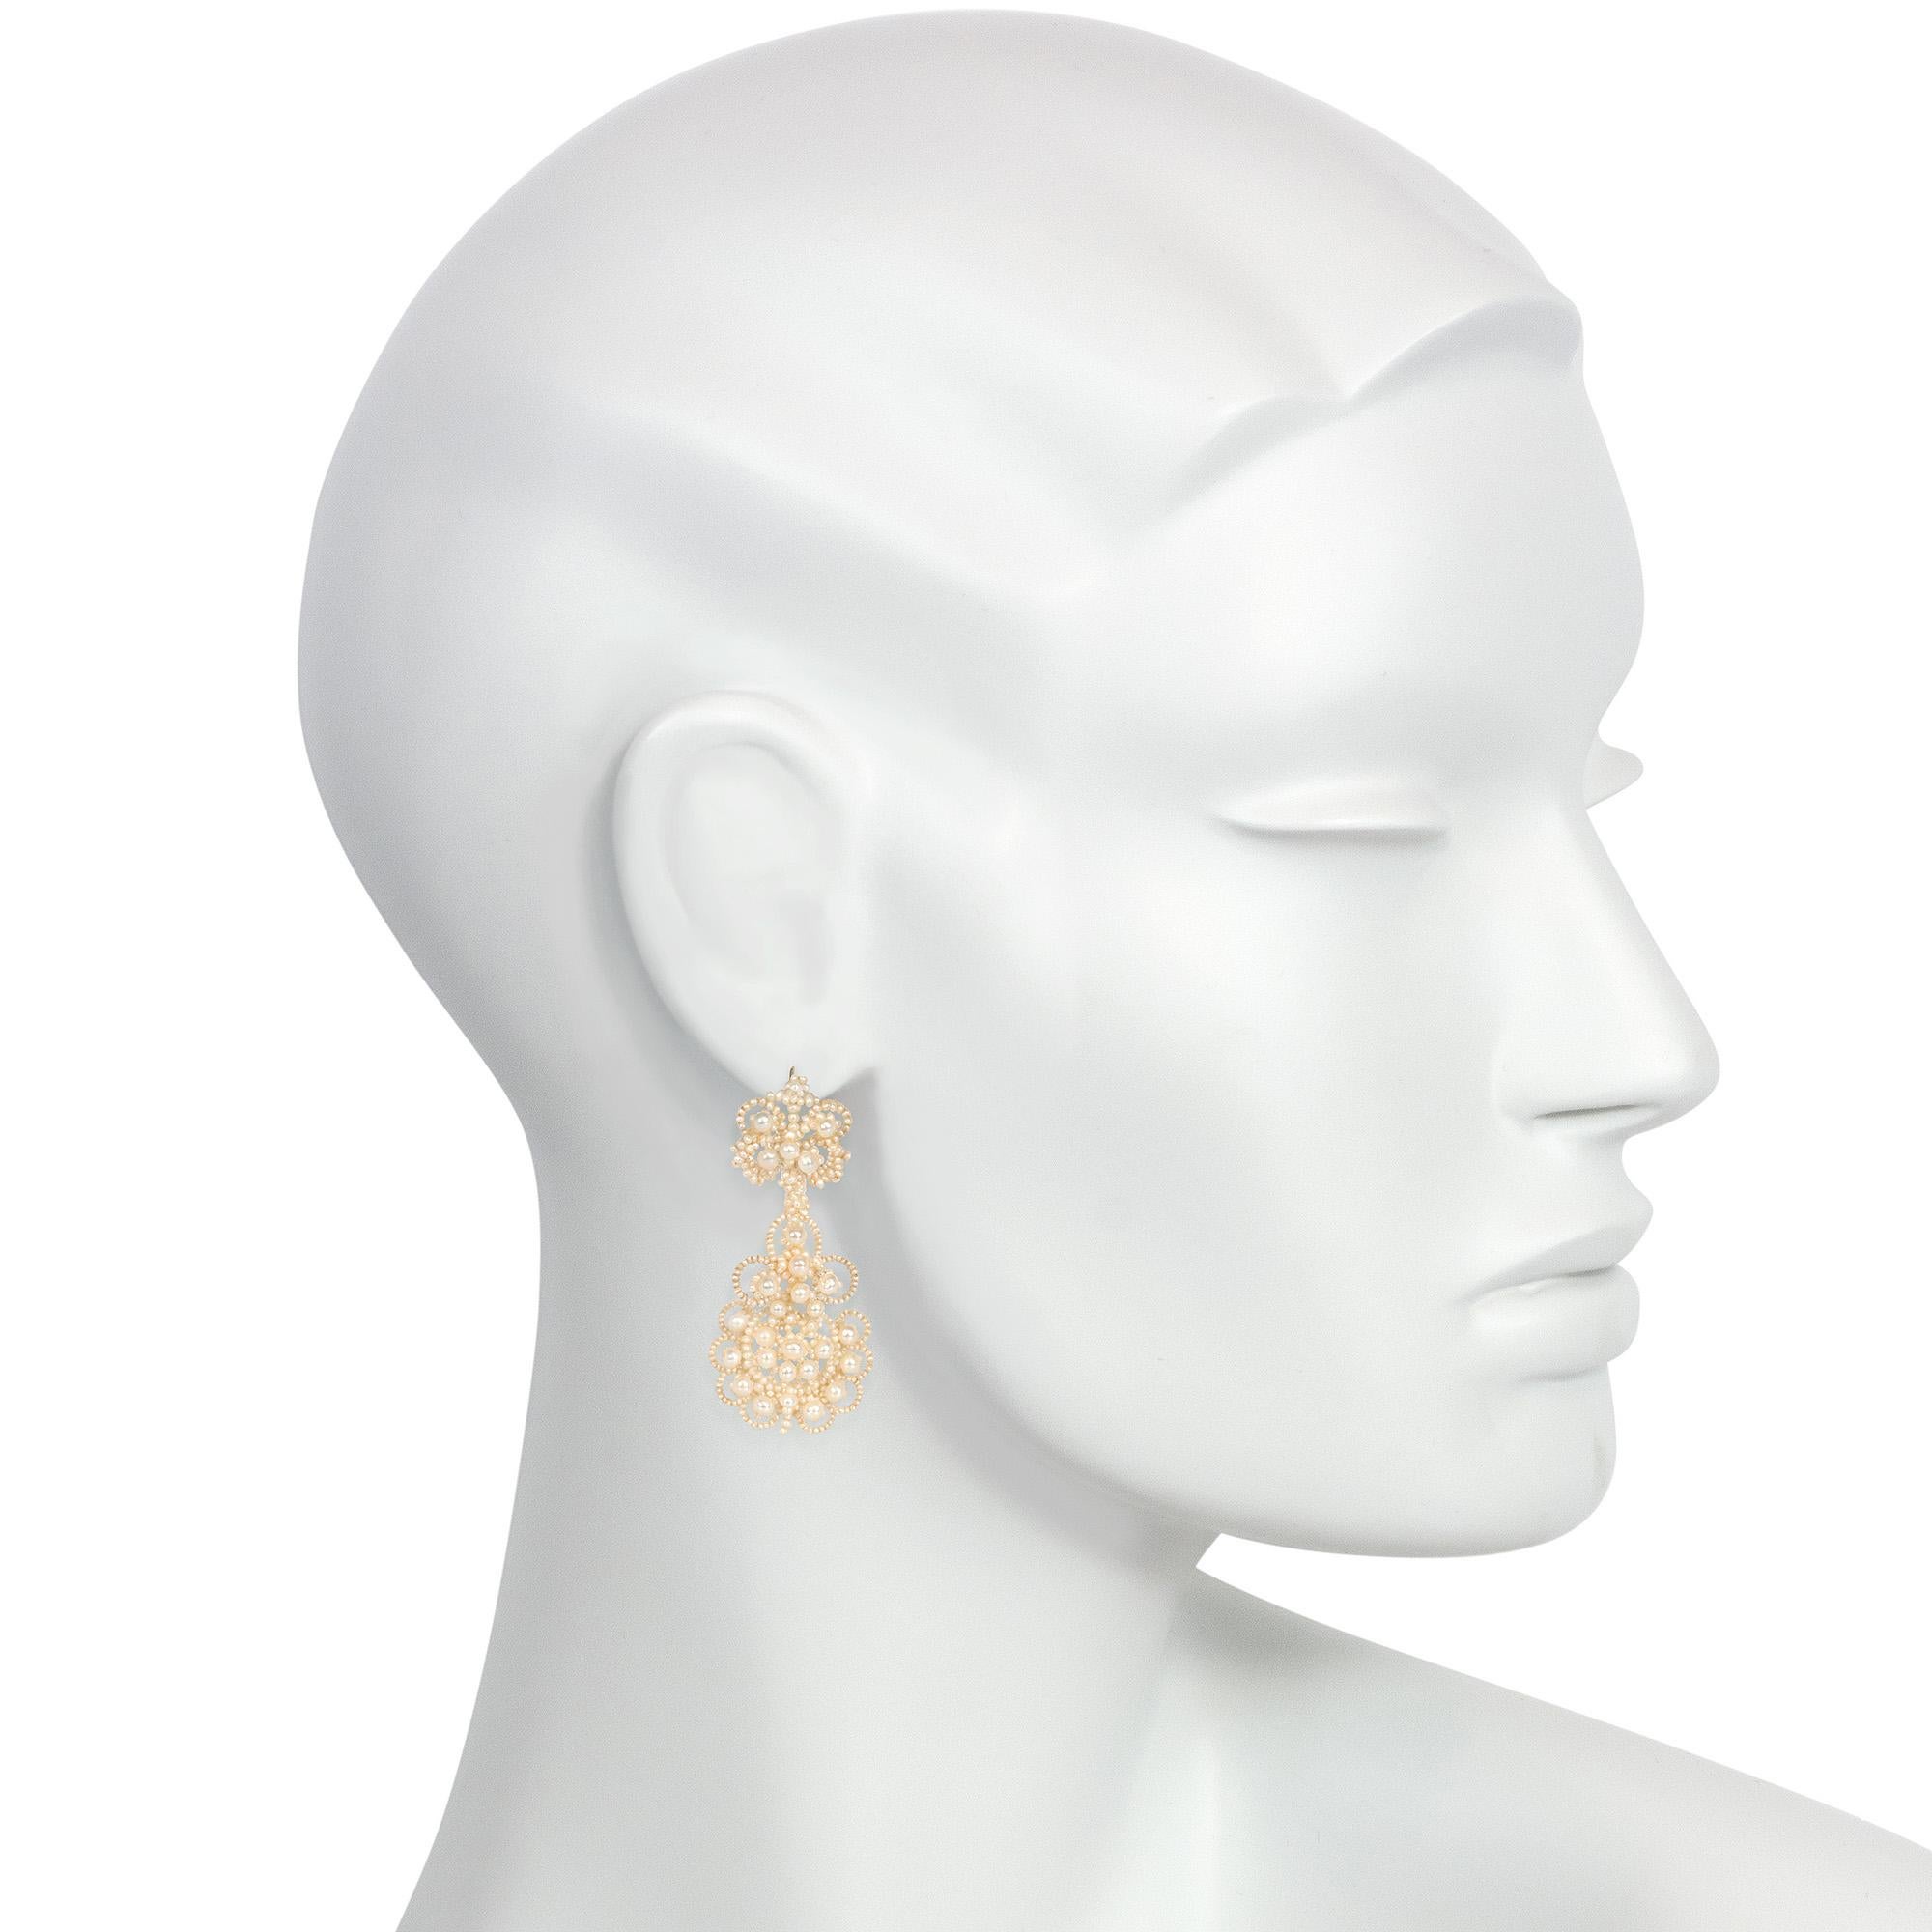 Bead Georgian Woven Seed Pearl Chandelier Earrings of Lace-Like Design